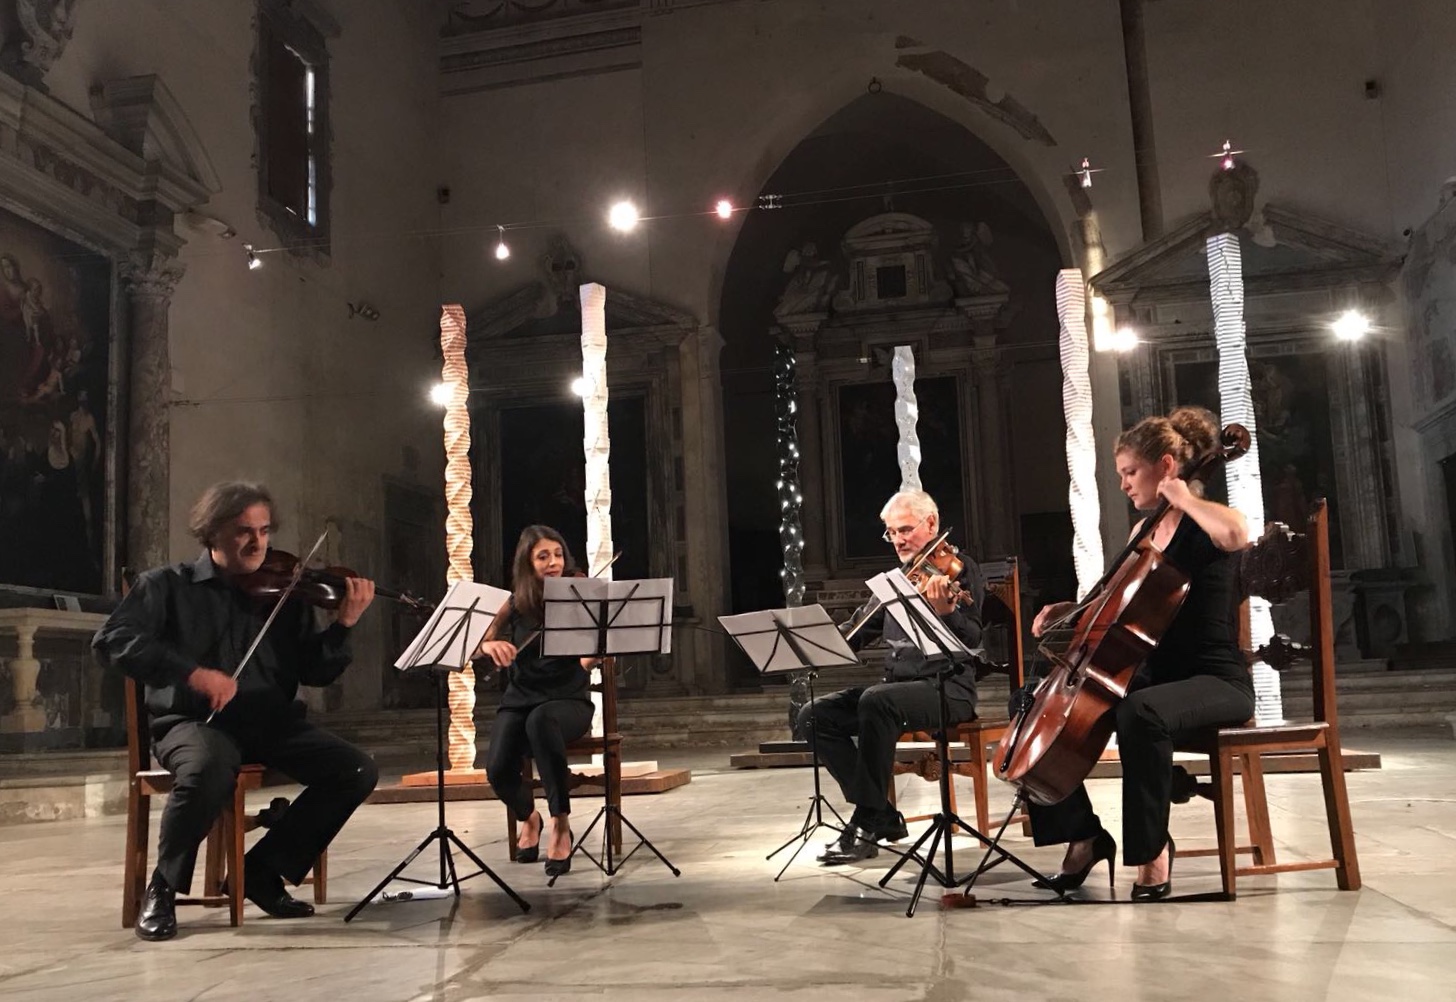 Grande debutto per “Pietrasanta in Musica”, ufficializzato il calendario dei concerti